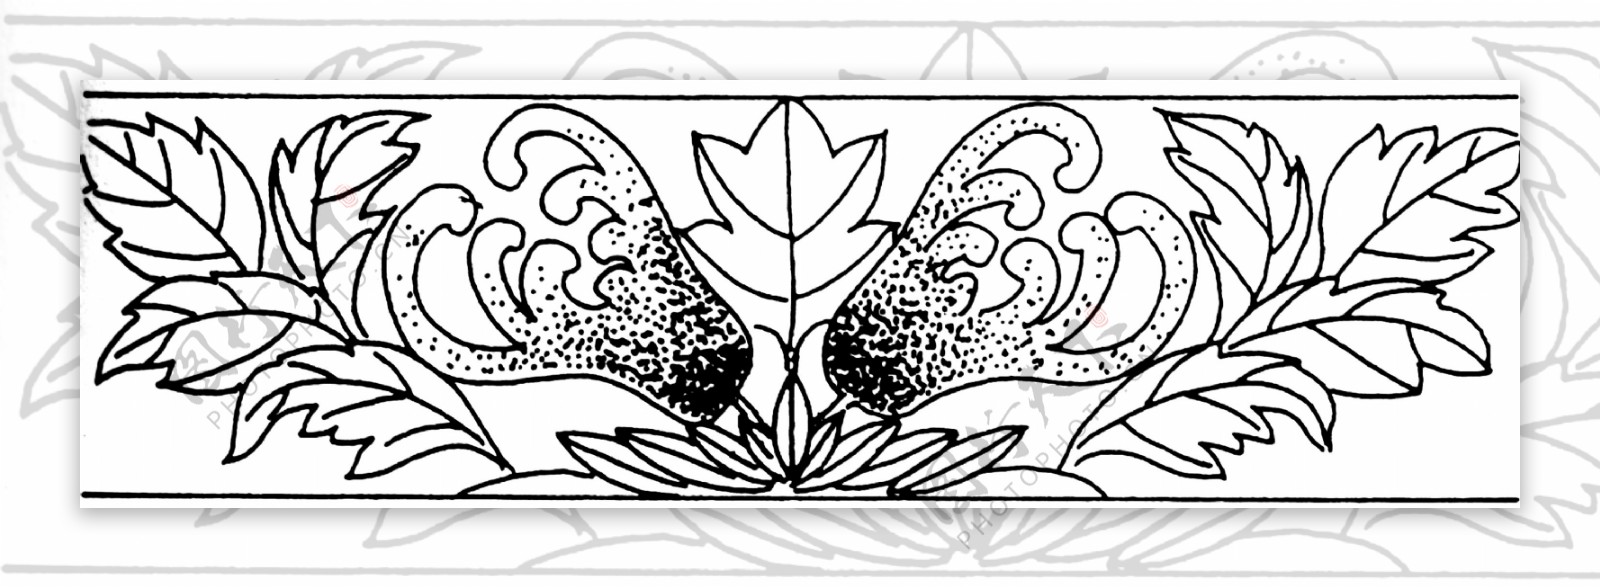 花边纹饰传统图案0172